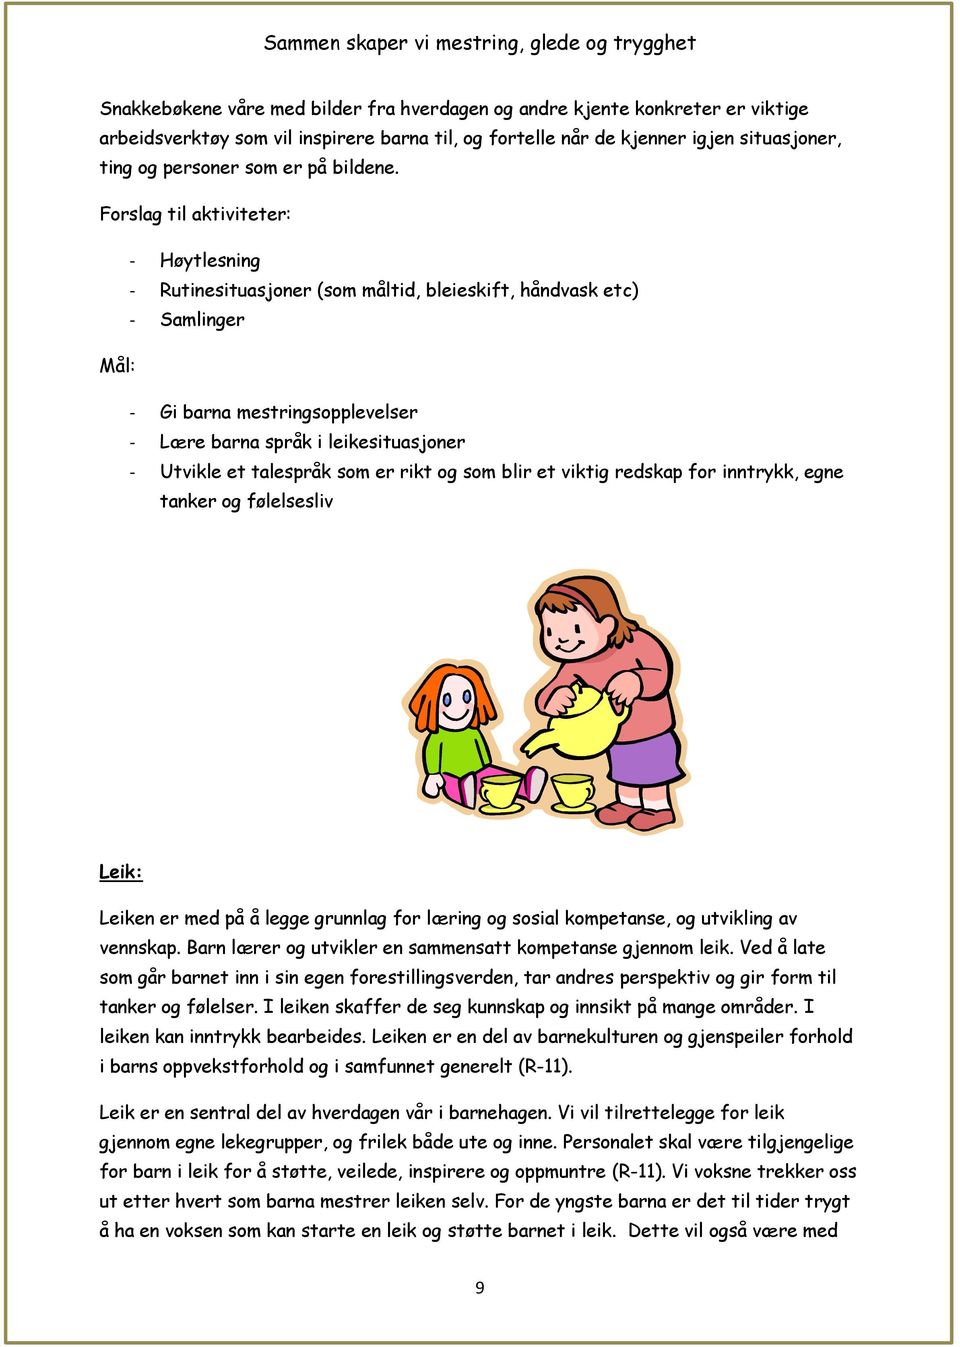 Forslag til aktiviteter: - Høytlesning - Rutinesituasjoner (som måltid, bleieskift, håndvask etc) - Samlinger Mål: - Gi barna mestringsopplevelser - Lære barna språk i leikesituasjoner - Utvikle et